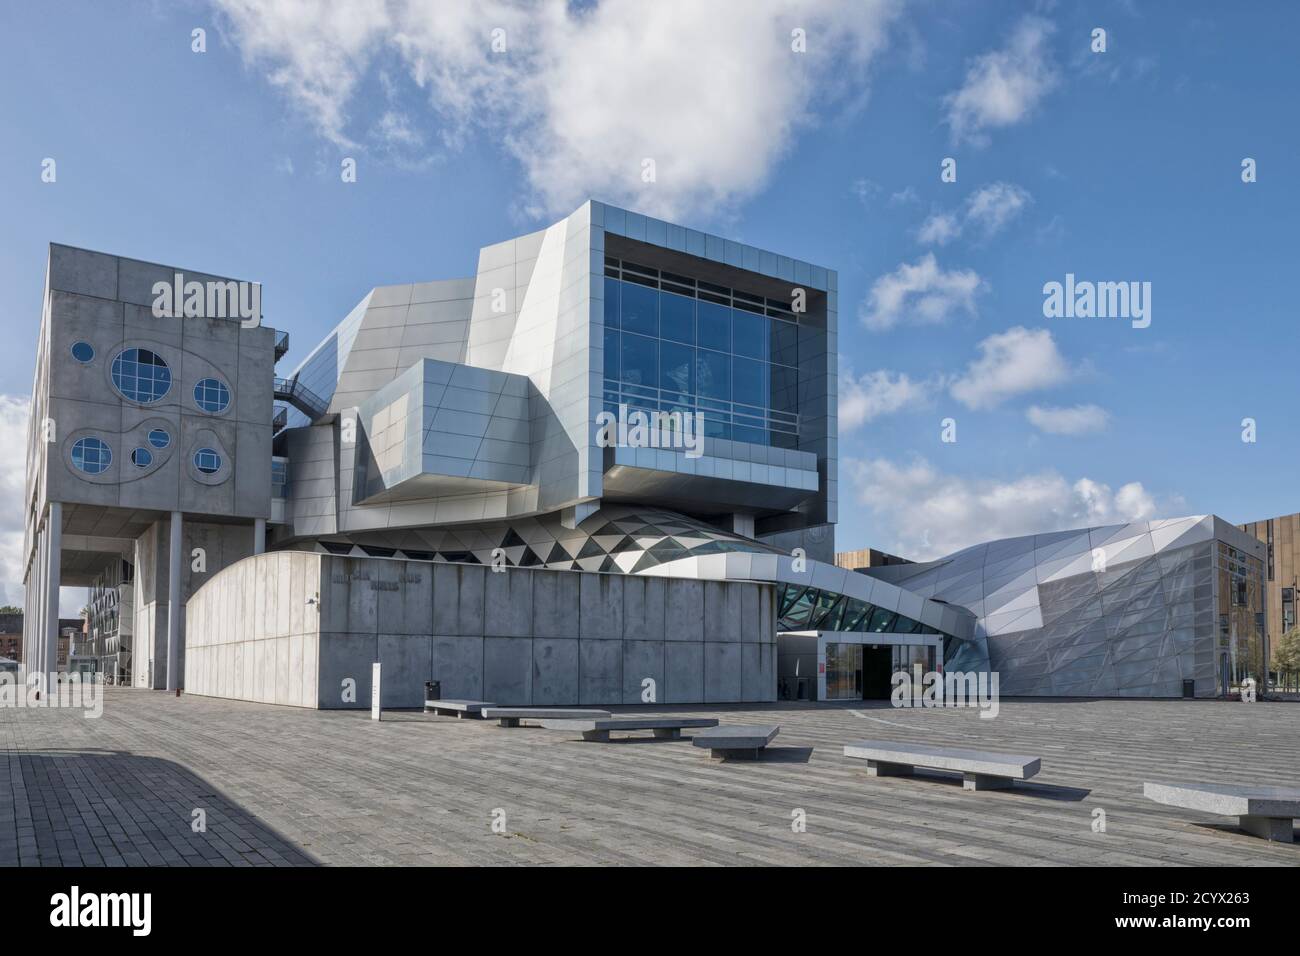 Aalborg, Dänemark – 4. September 2020: Musikkens Hus, multifunktionaler Veranstaltungsort mit Konzertsälen und Proberäumen des österreichischen Architekten Coop Himmelb( Stockfoto